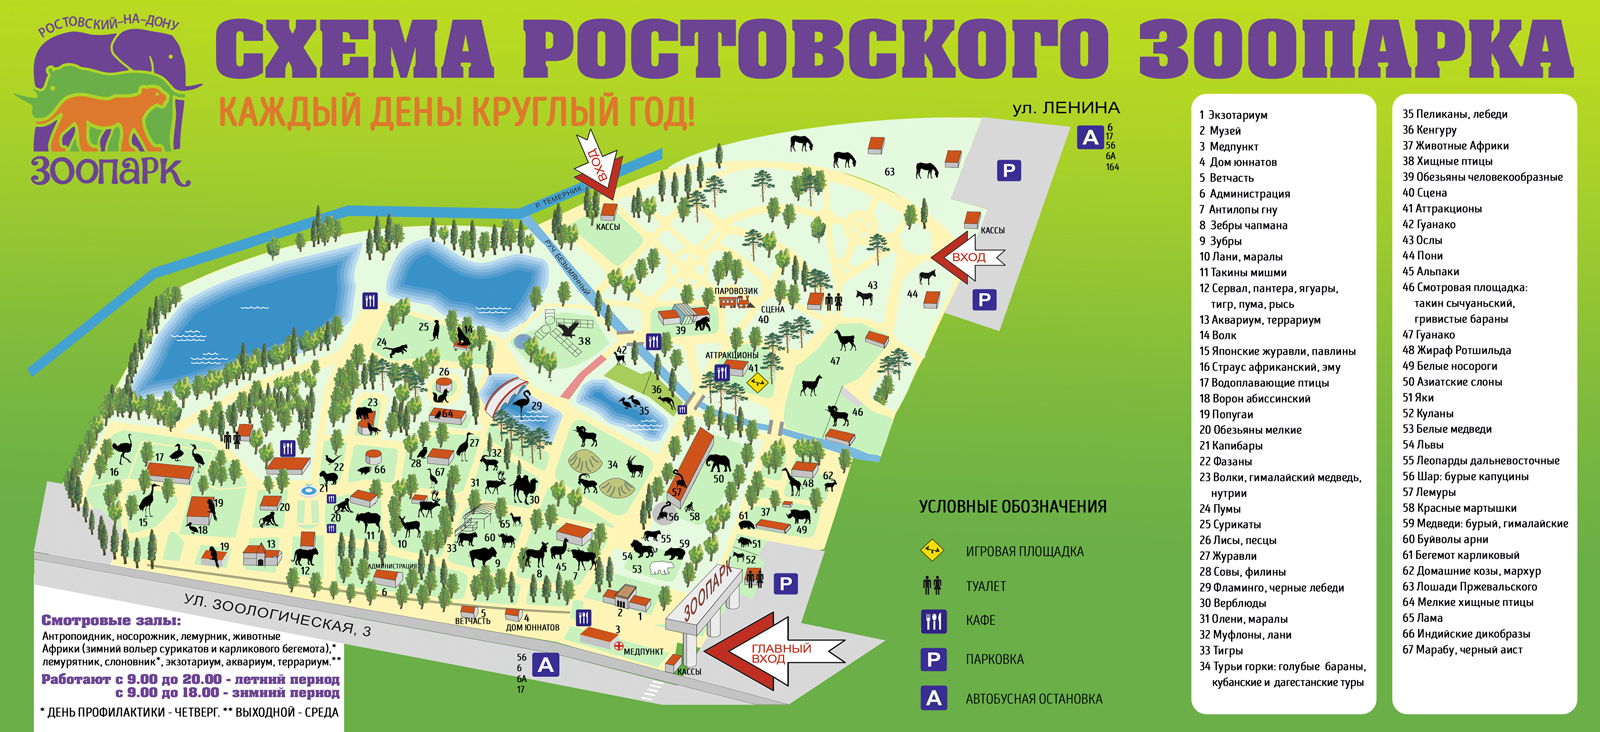 В зоопарке Ростова планируют построить жилье для крокодила за 10,5 млн рублей - фото 1